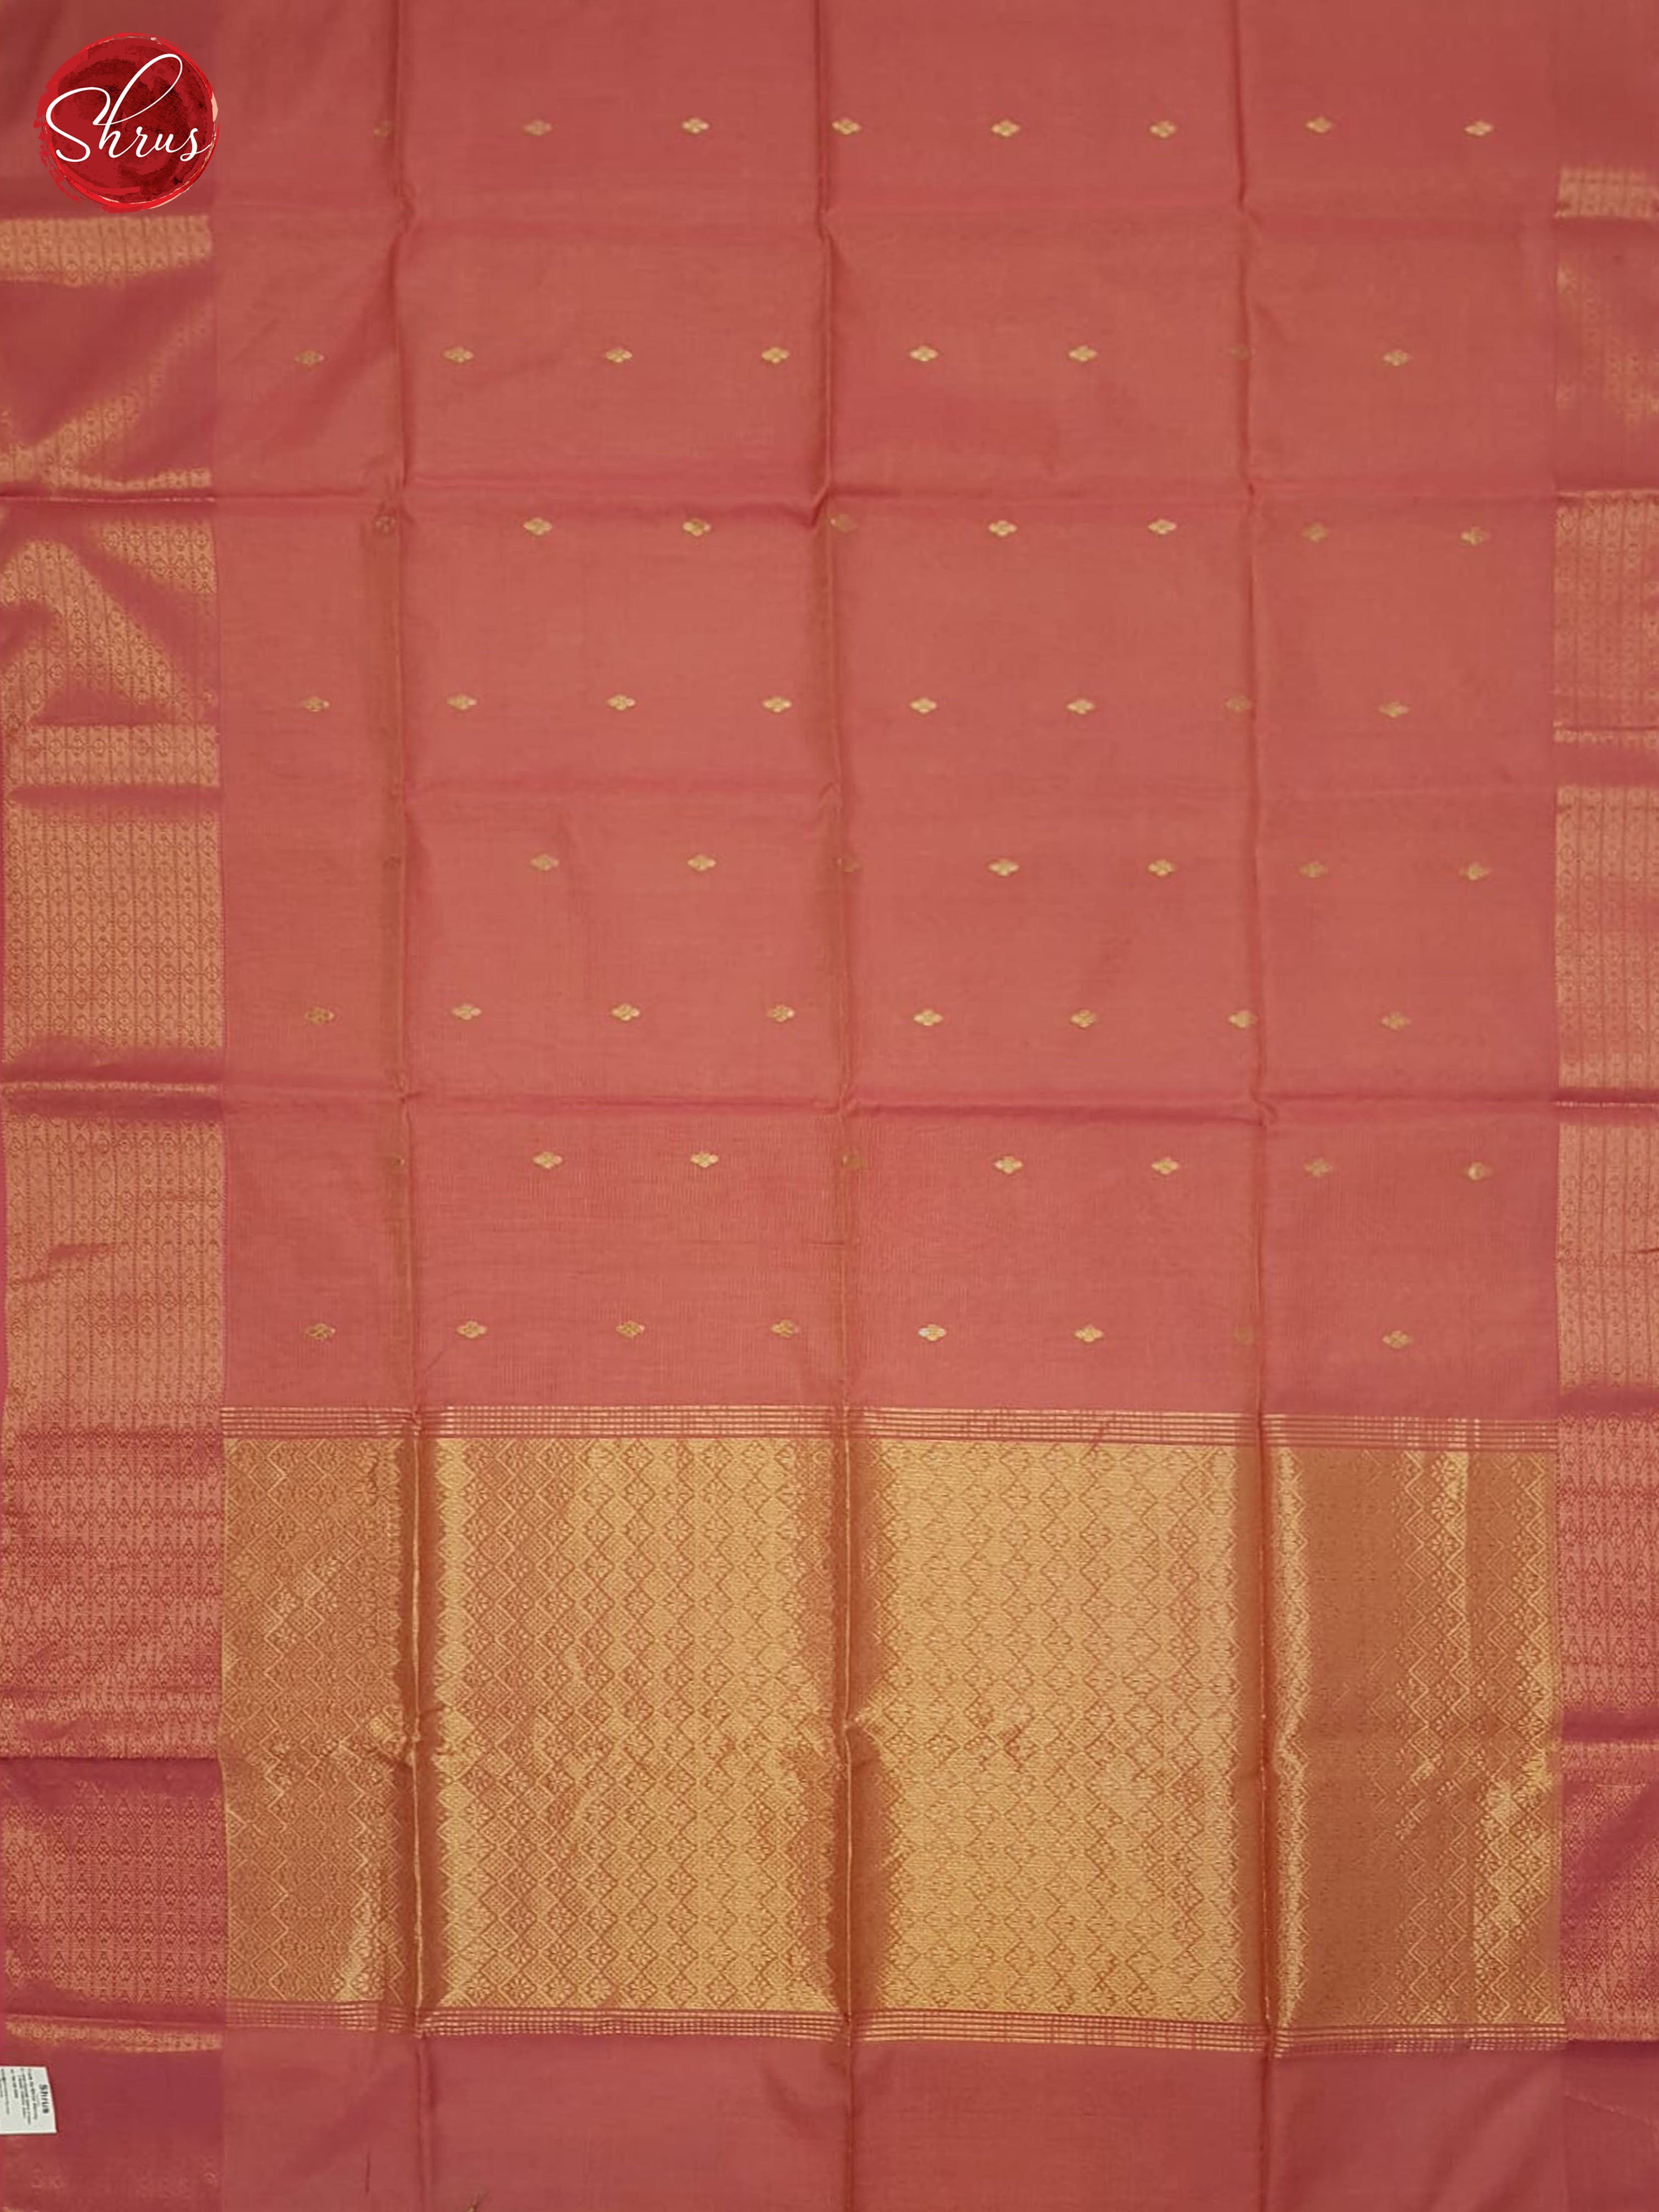 BJS06727 - Maheshwari silkcotton Saree - Shop on ShrusEternity.com